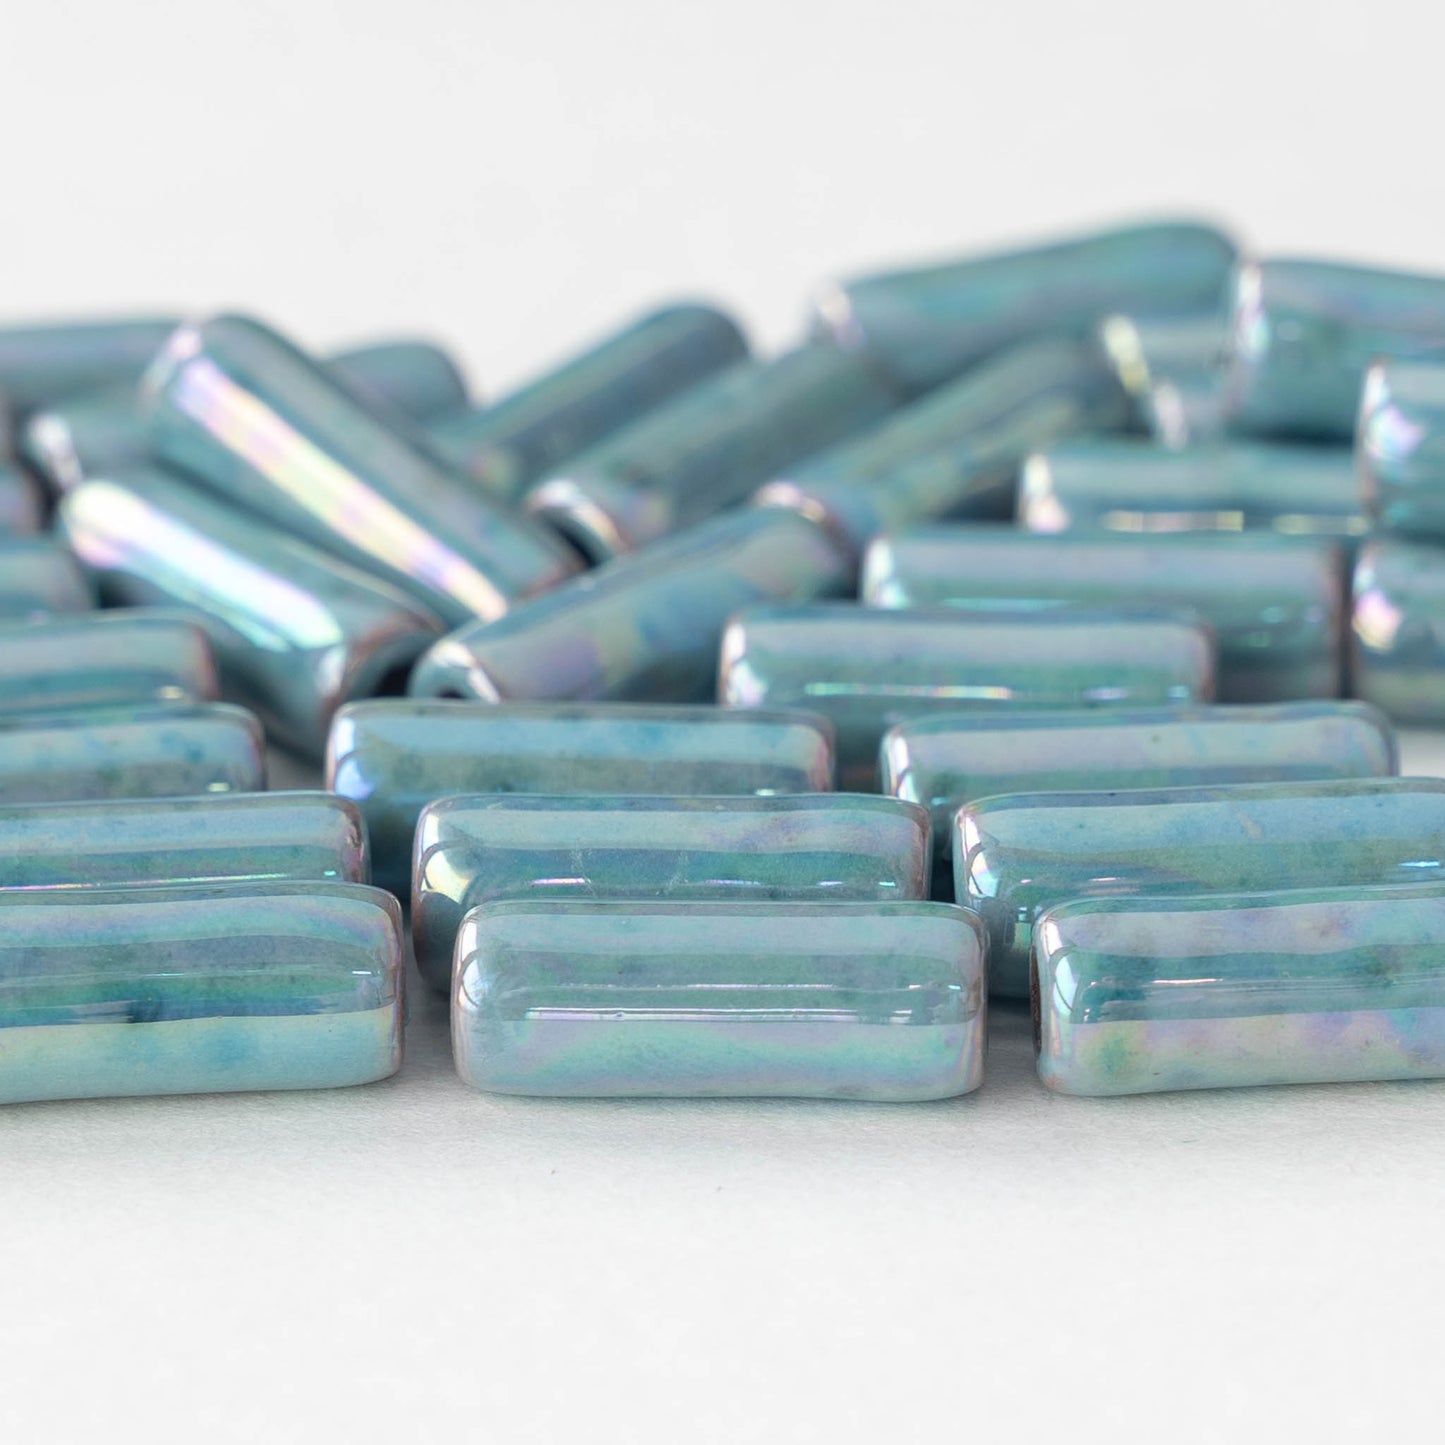 17mm Glazed Ceramic Tube Beads - Iridescent Light Blue - 8 or 24